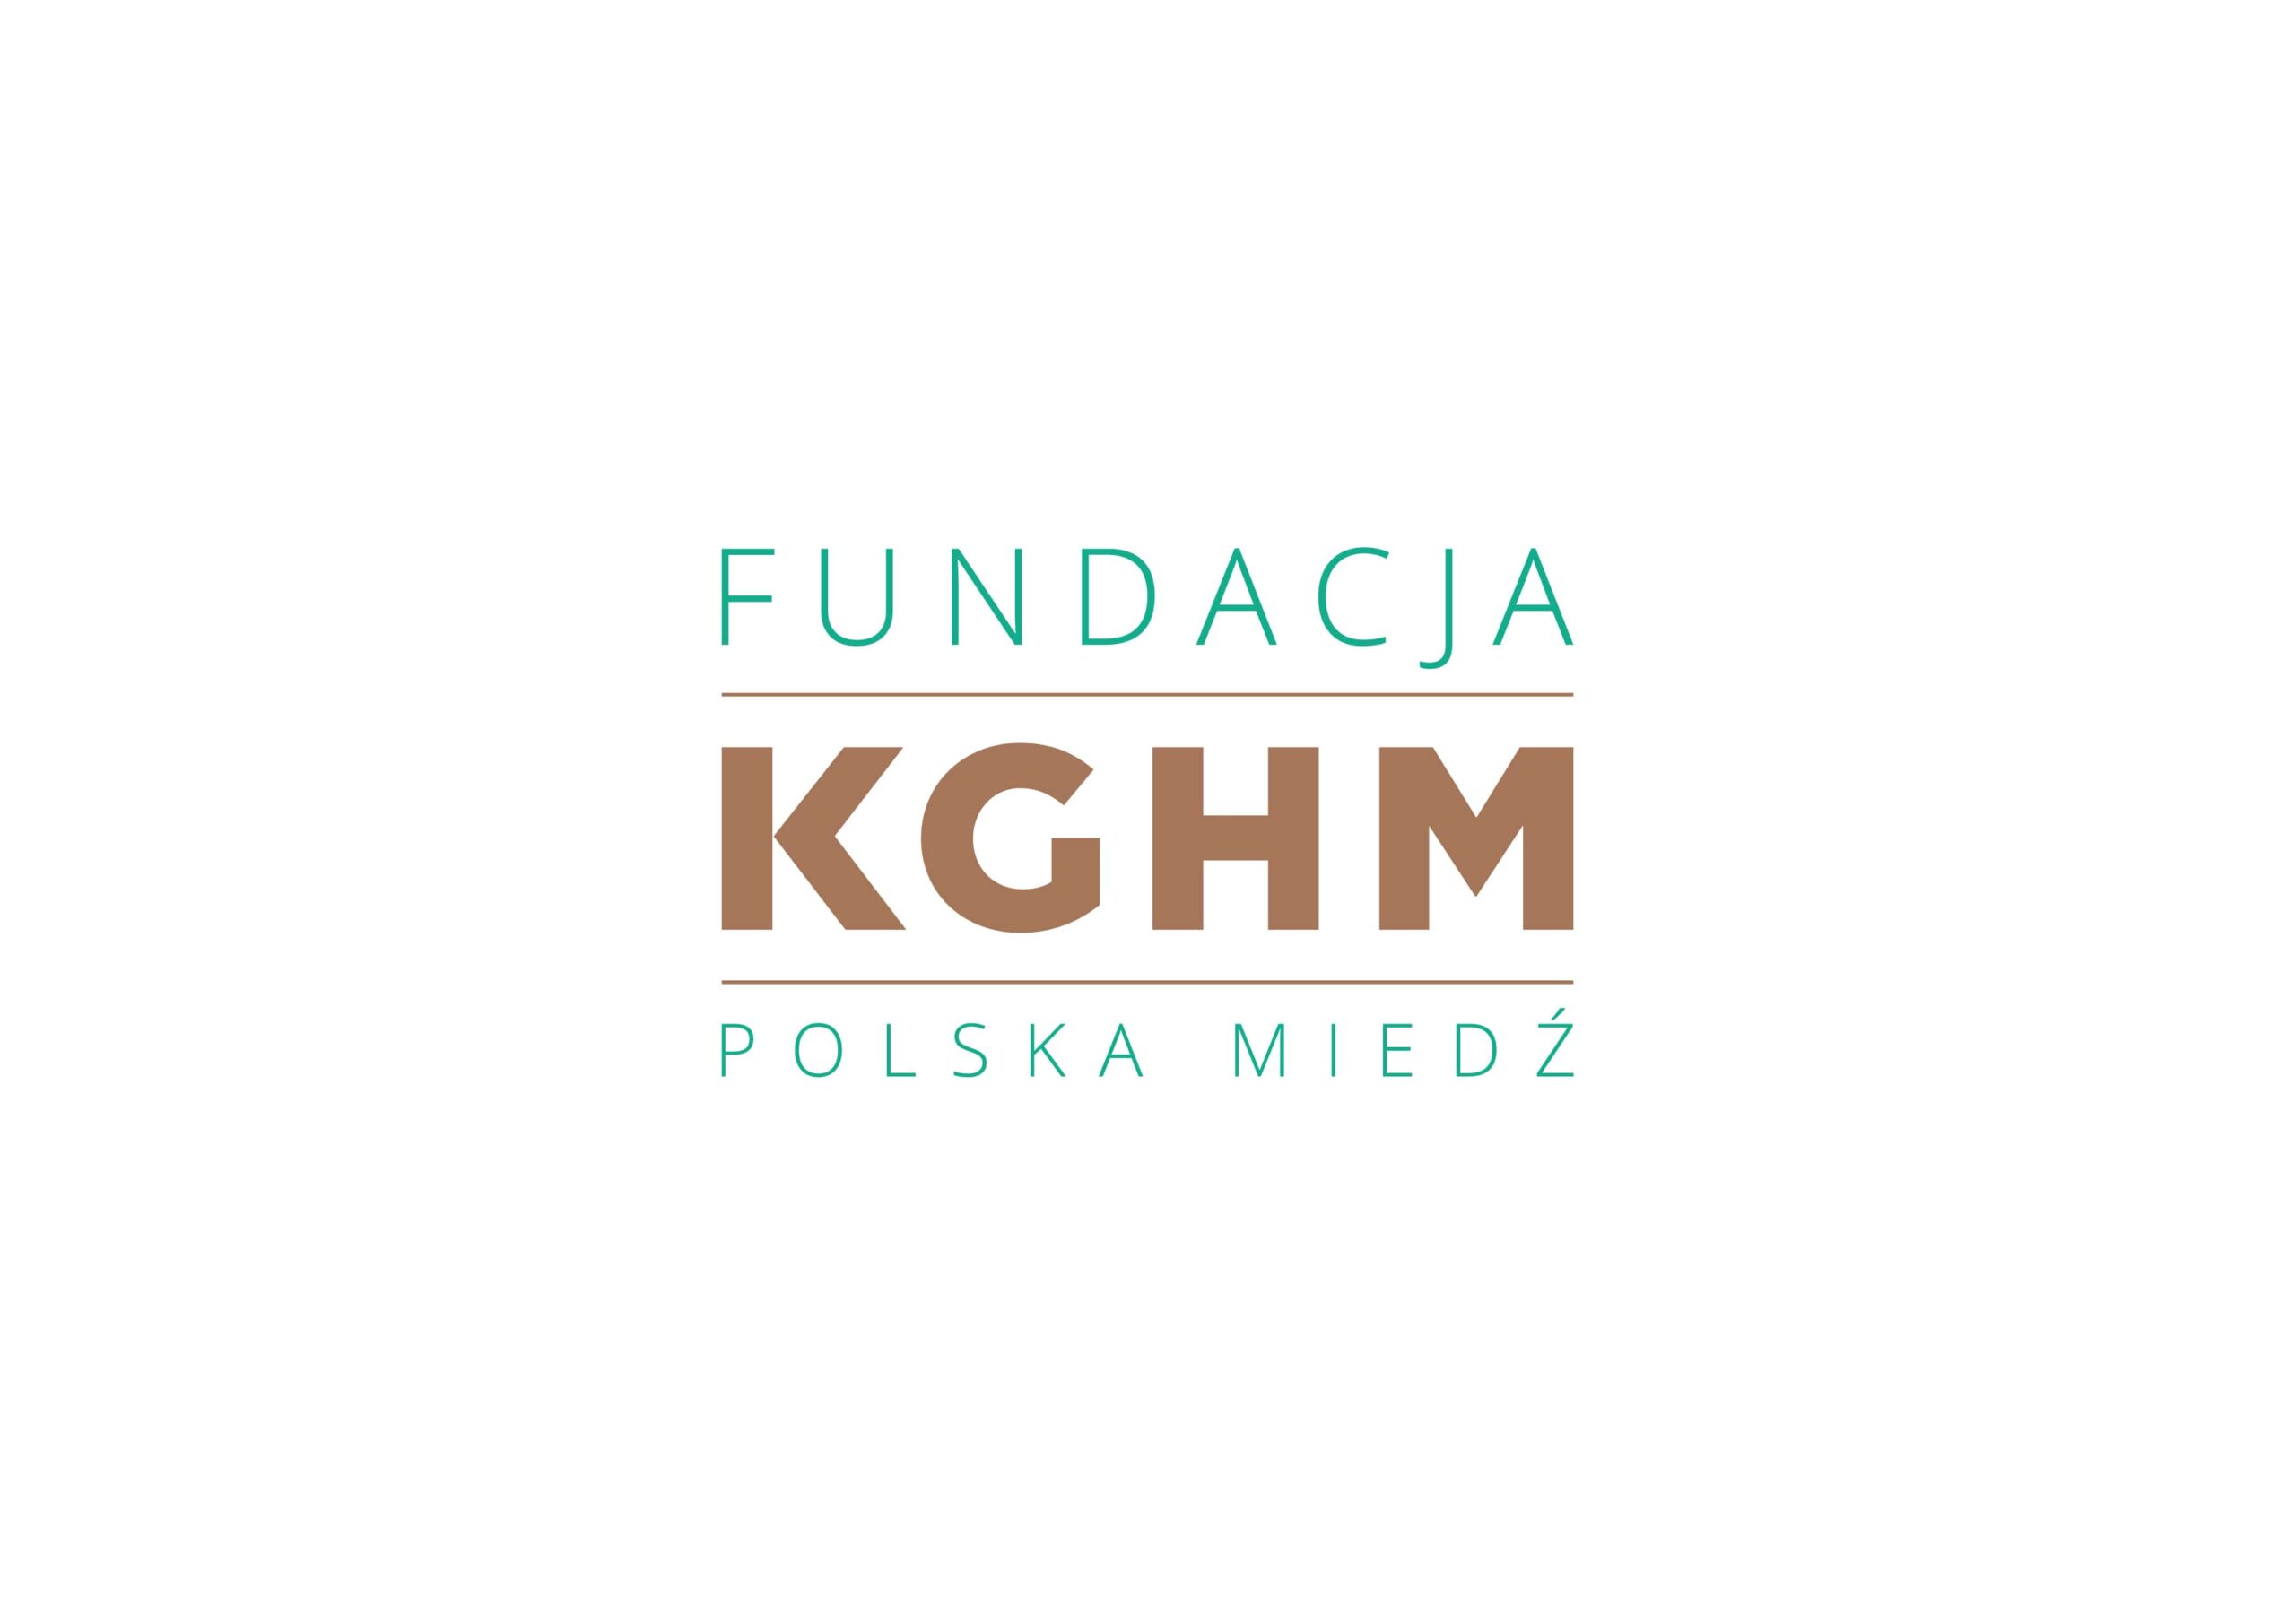 Fundacja KGHM Polska Mied�